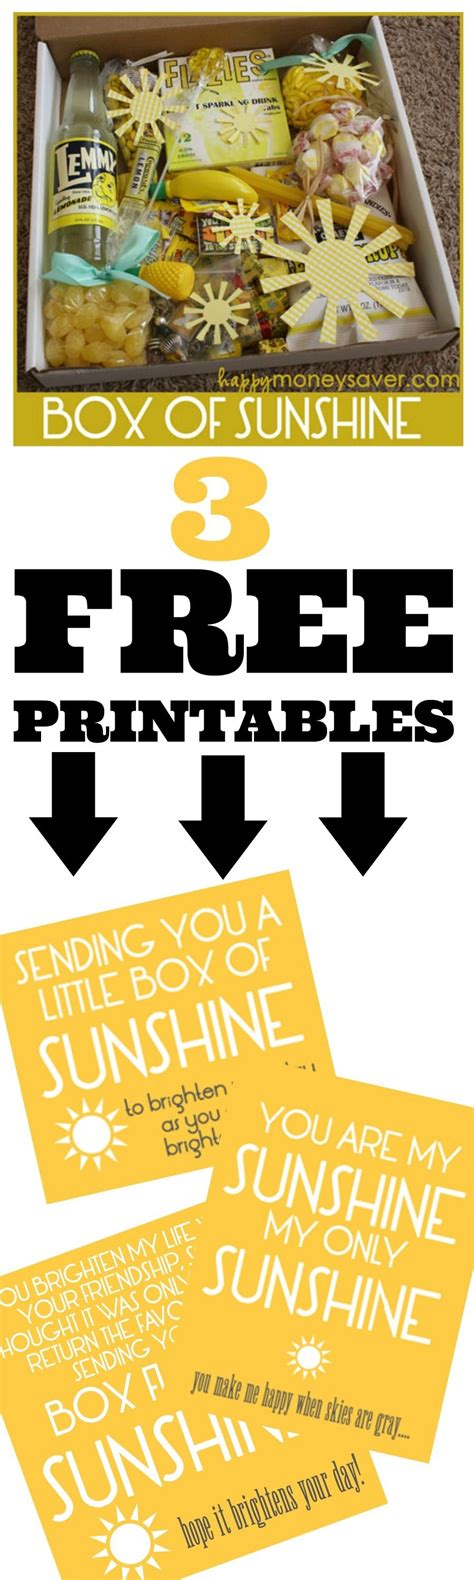 box  sunshine  printable  printable